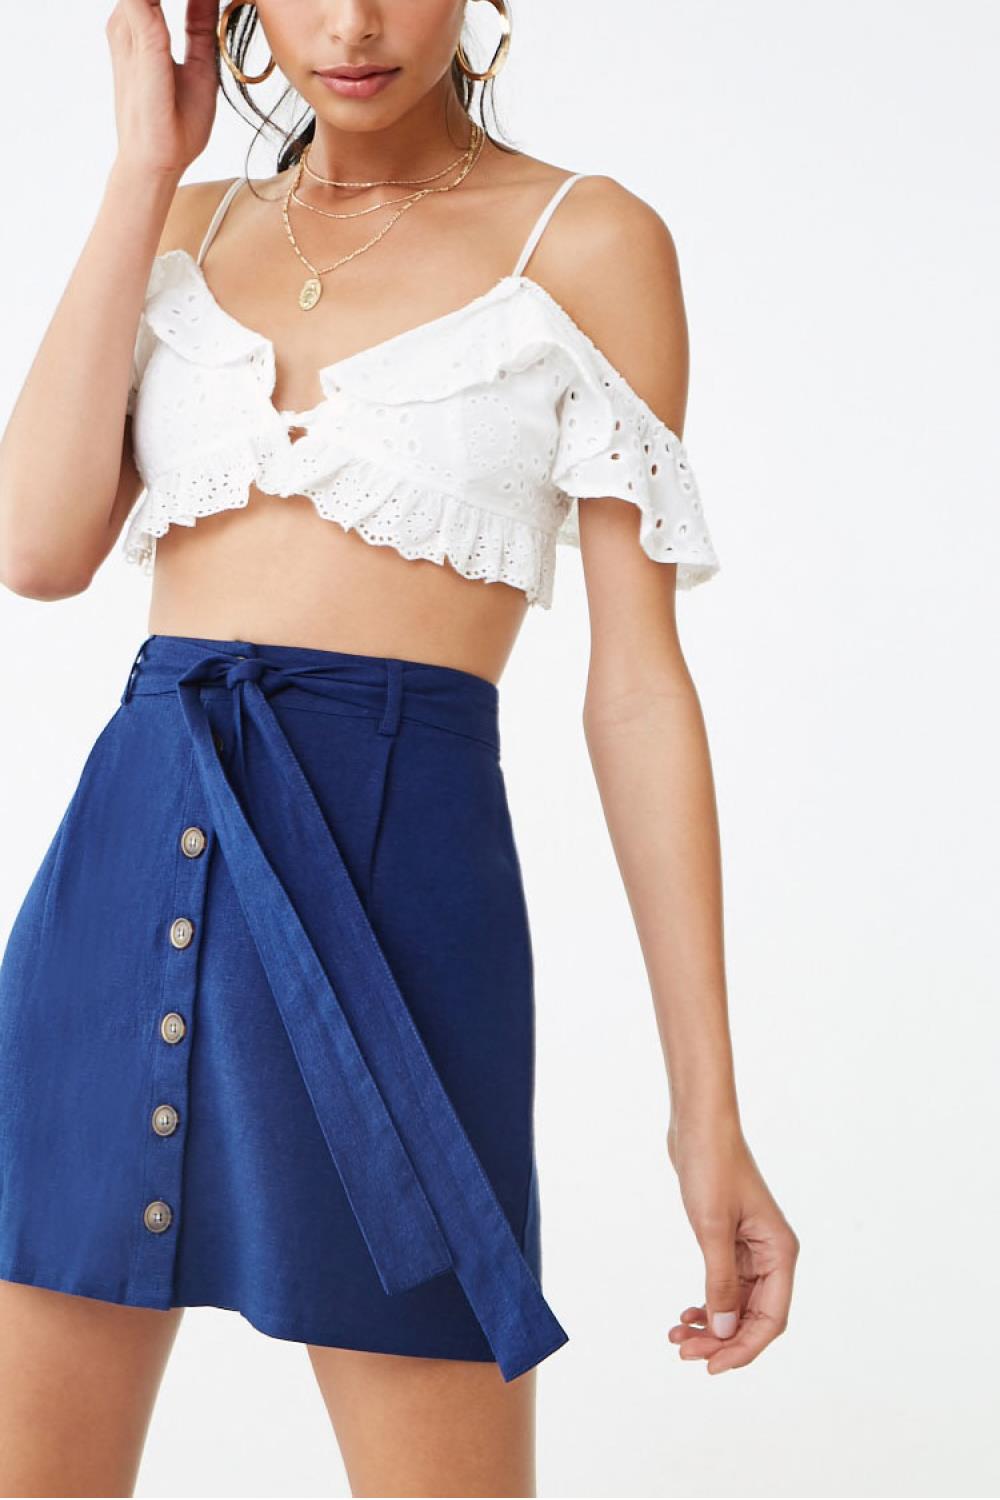 ropa de moda novedades low cost minifalda forever 21 16€